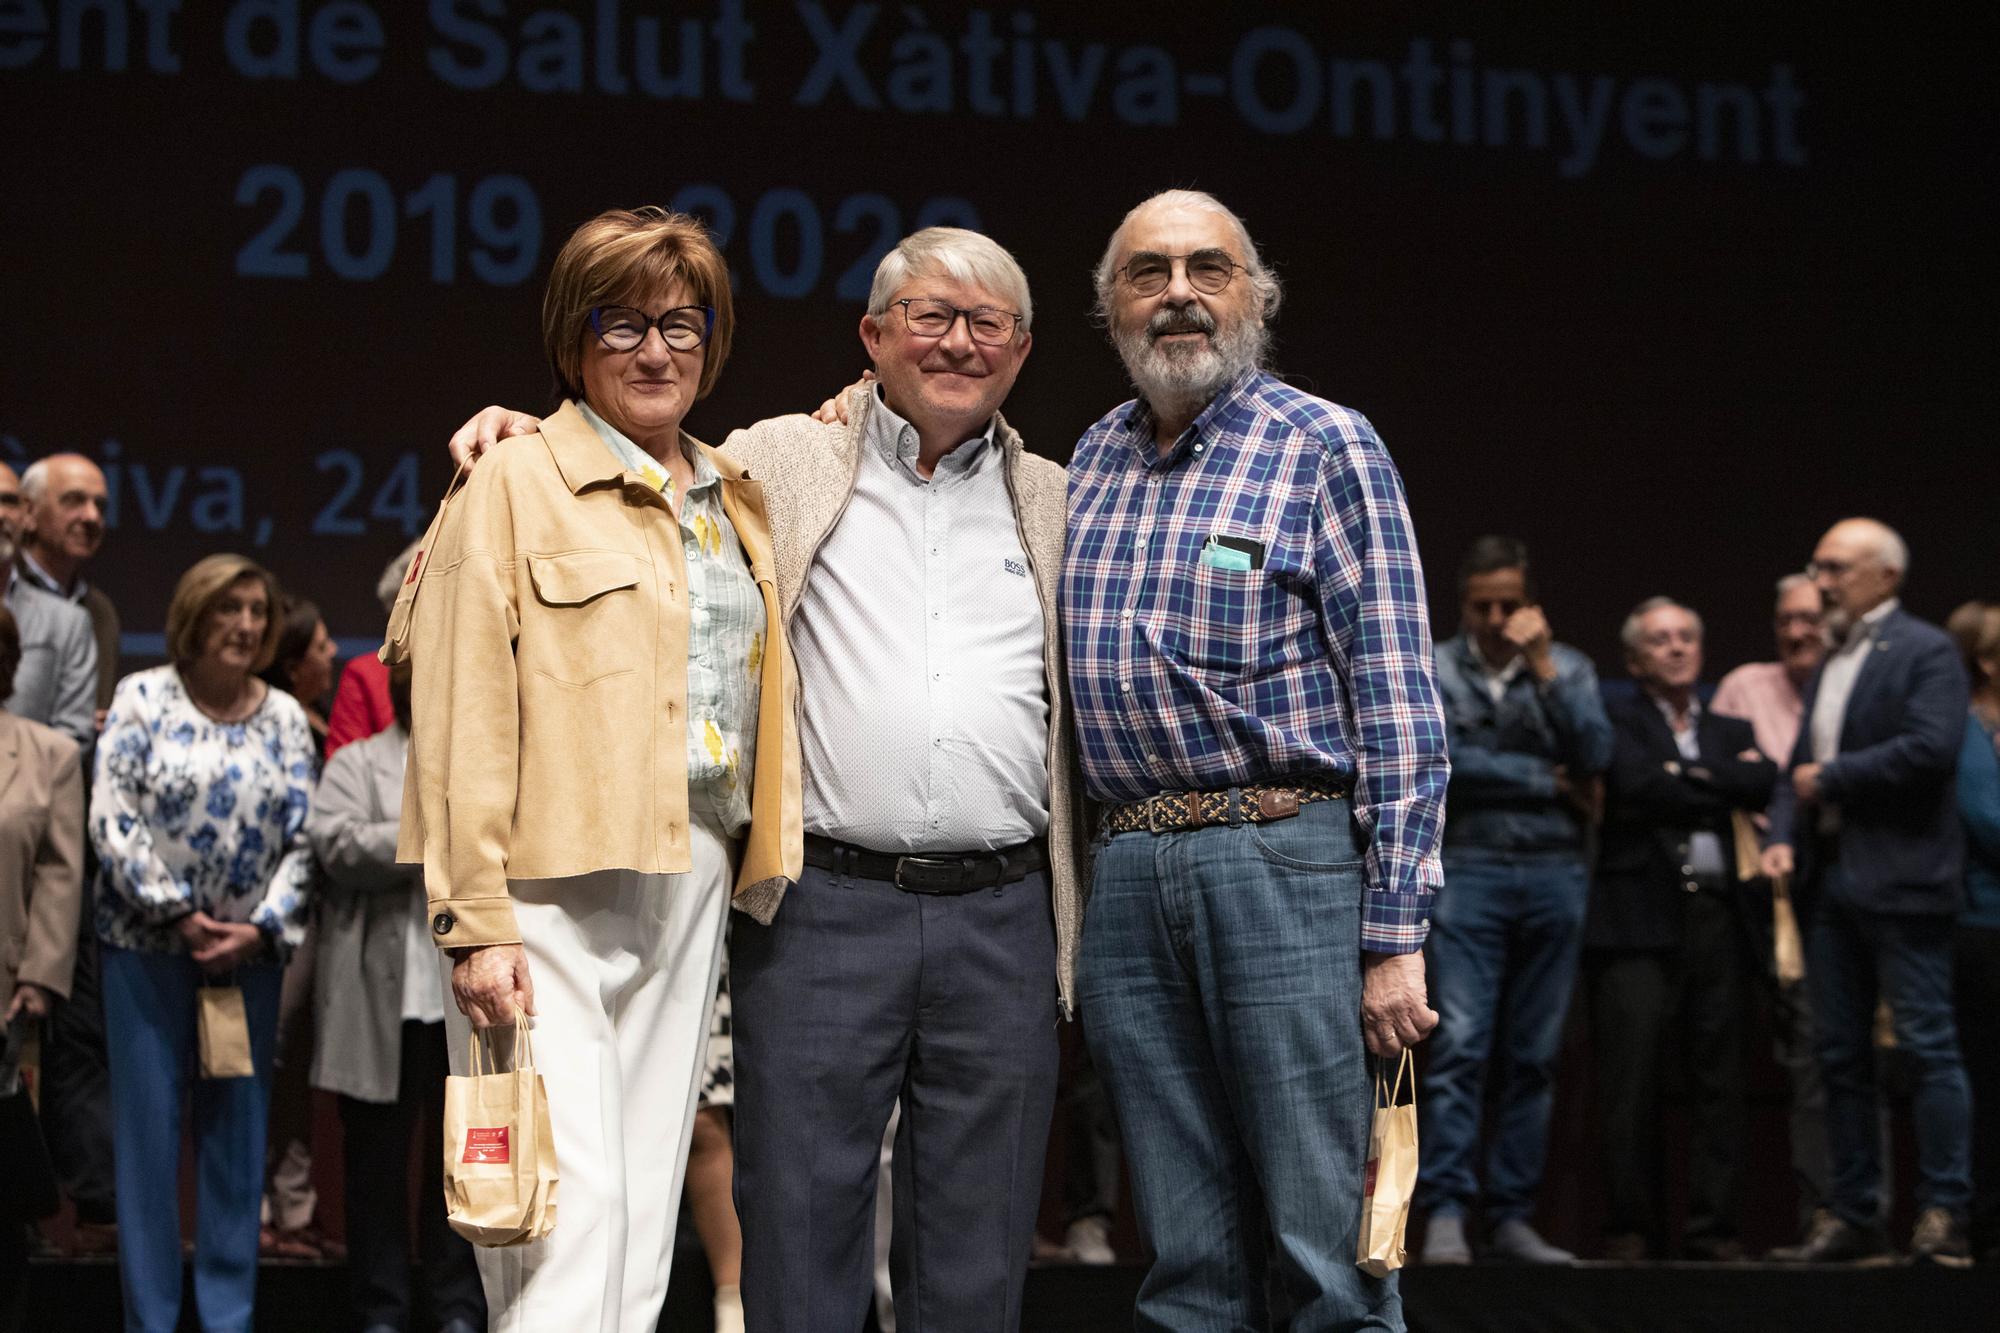 Homenaje a los jubilados del Departamento de Salud Xàtiva-Ontinyent 2019 - 2022